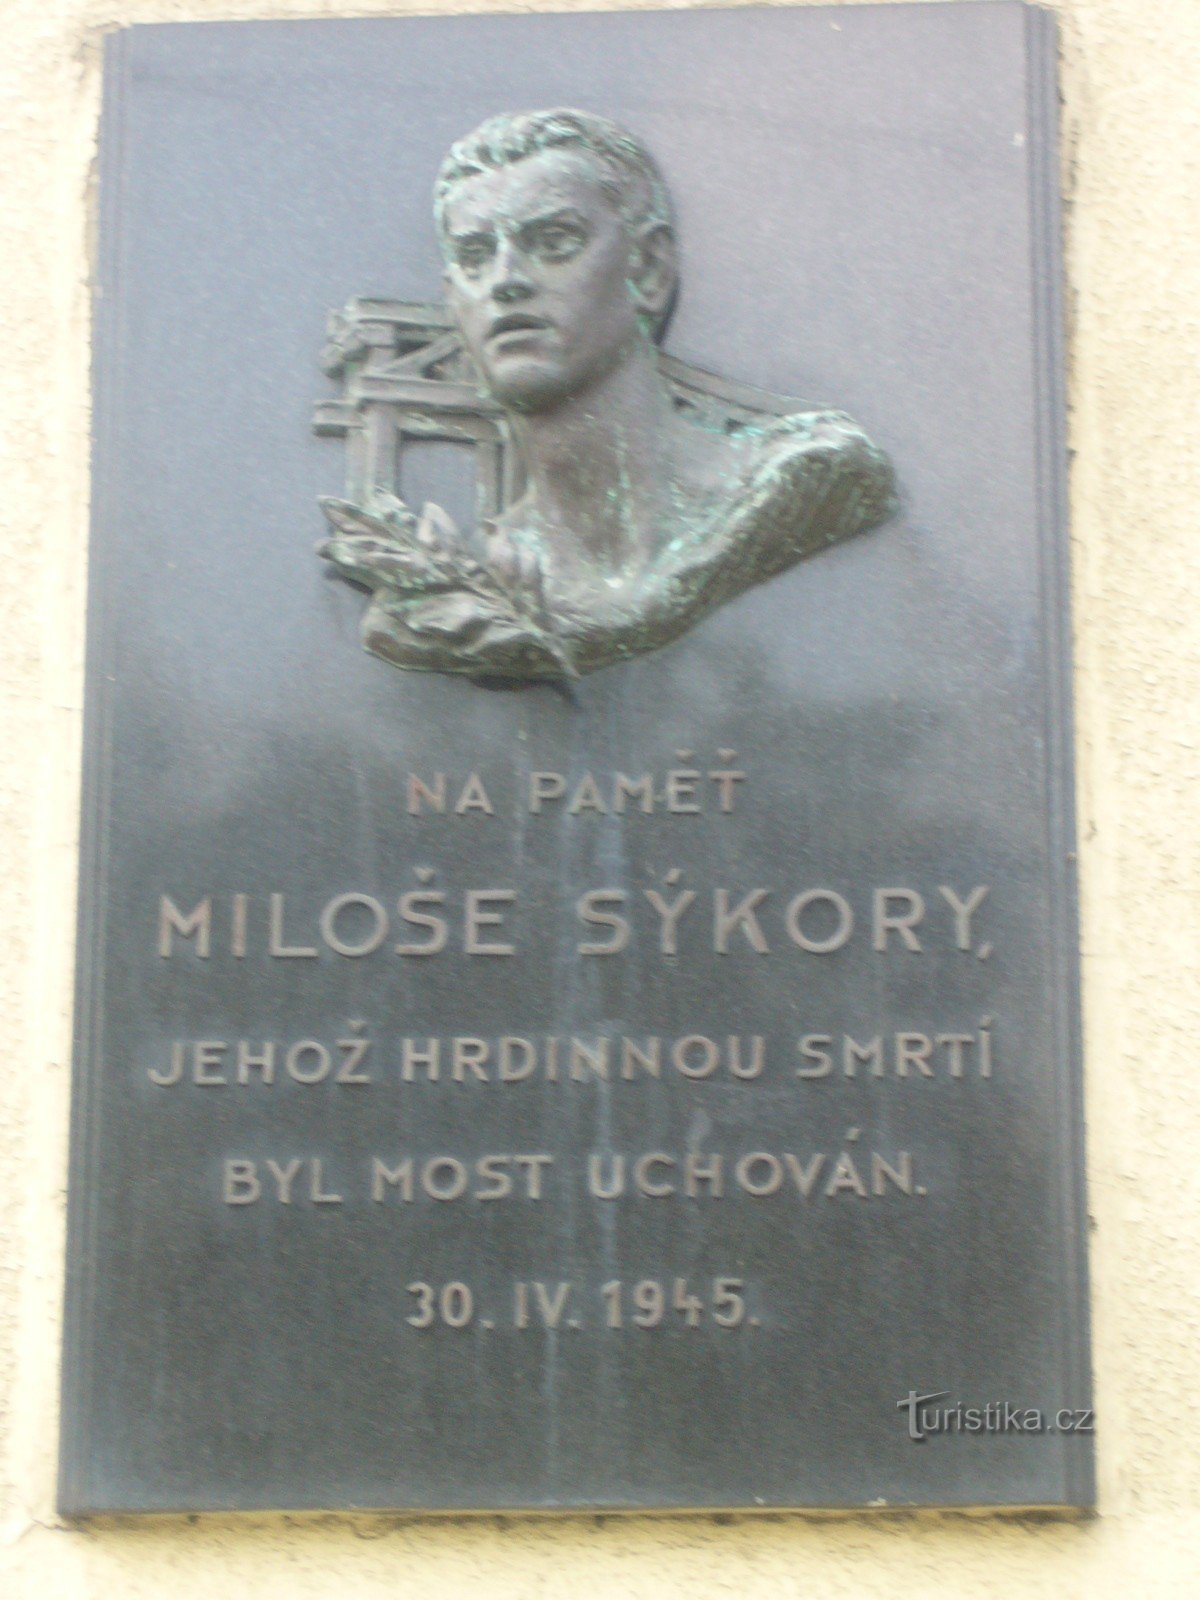 Пам'ятник Мілошу Сикорі